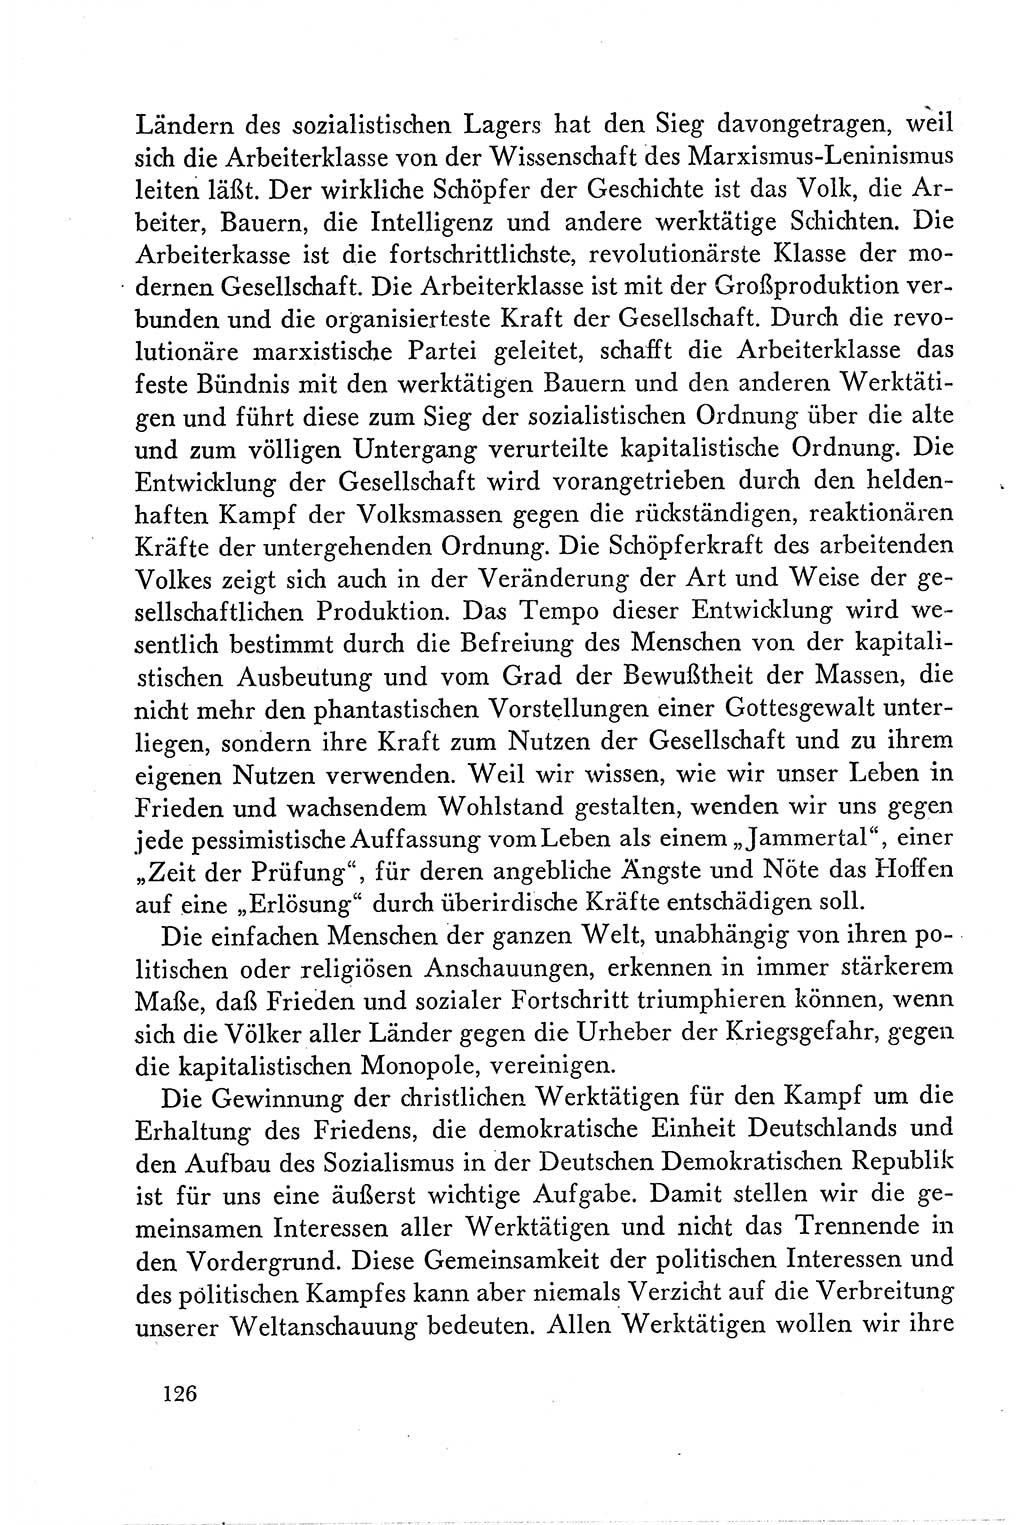 Dokumente der Sozialistischen Einheitspartei Deutschlands (SED) [Deutsche Demokratische Republik (DDR)] 1958-1959, Seite 126 (Dok. SED DDR 1958-1959, S. 126)